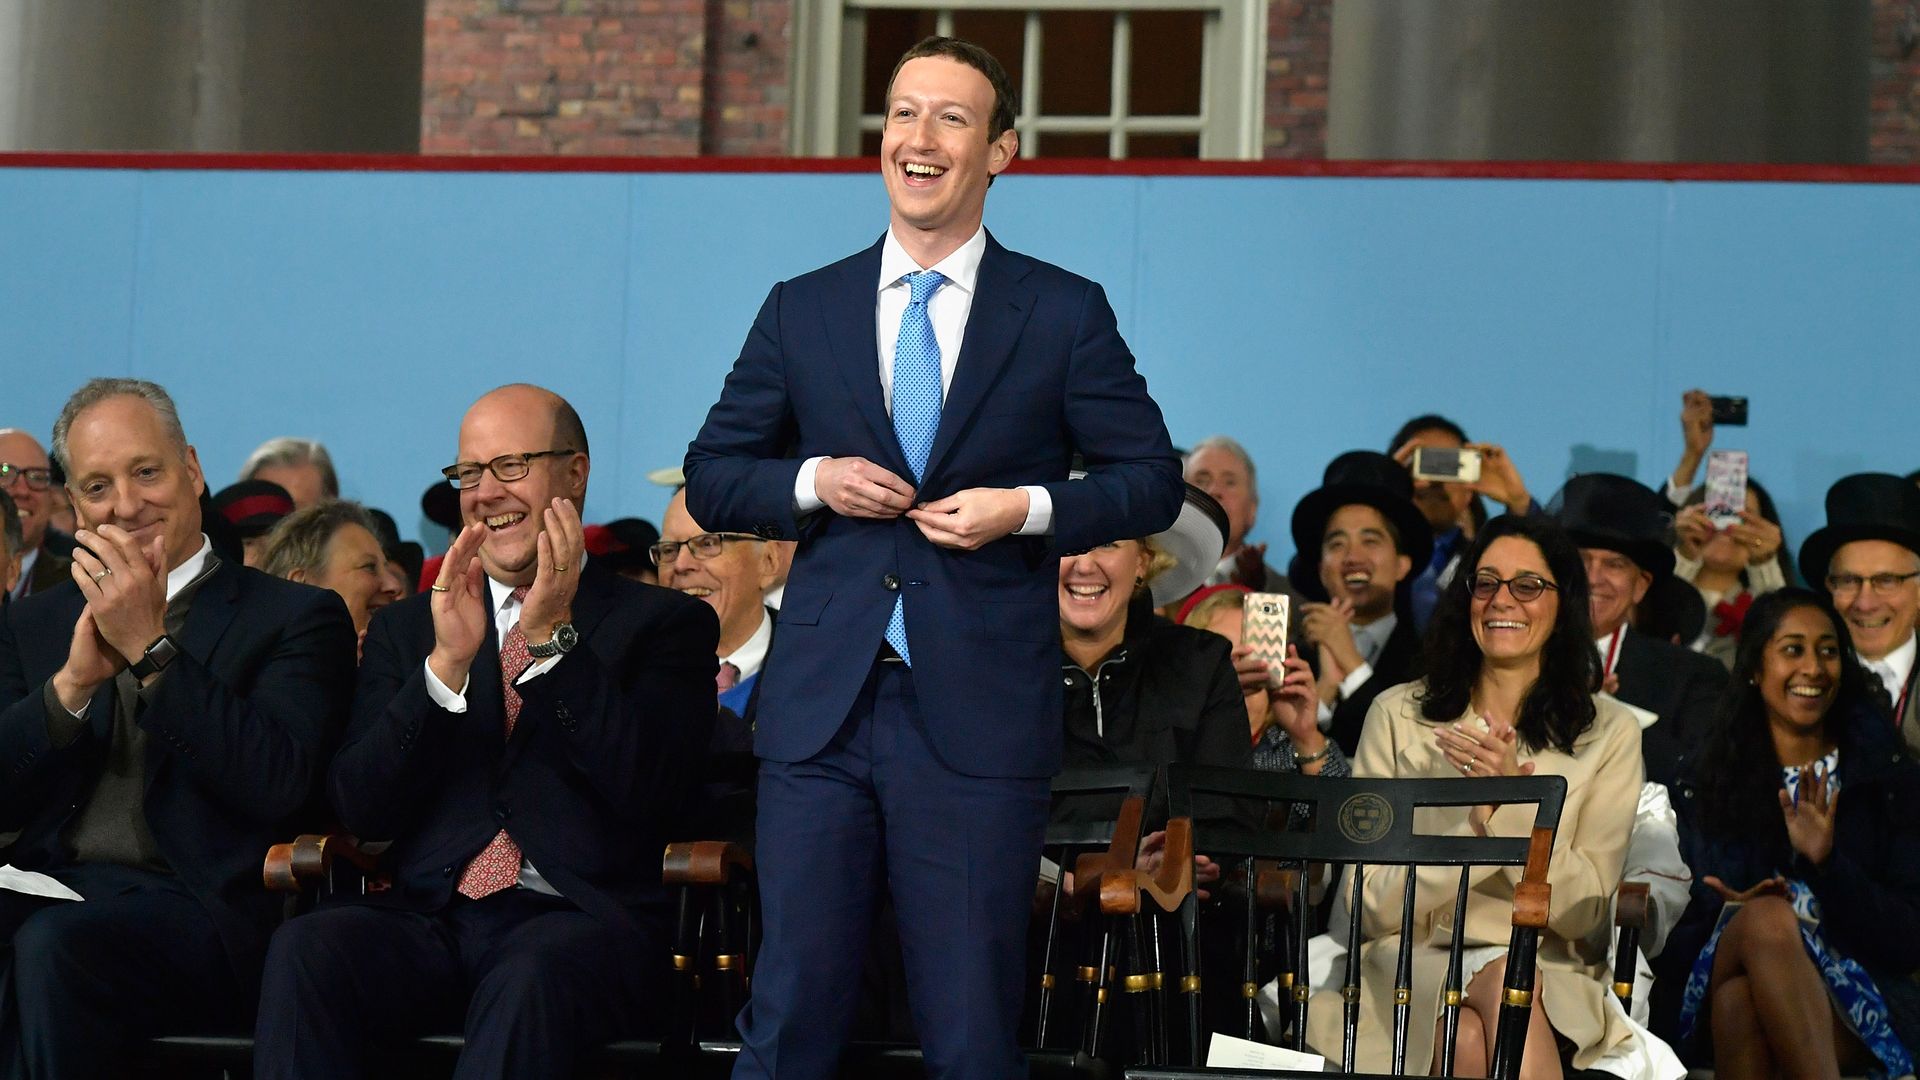 Mark Zuckerberg wearing a suit